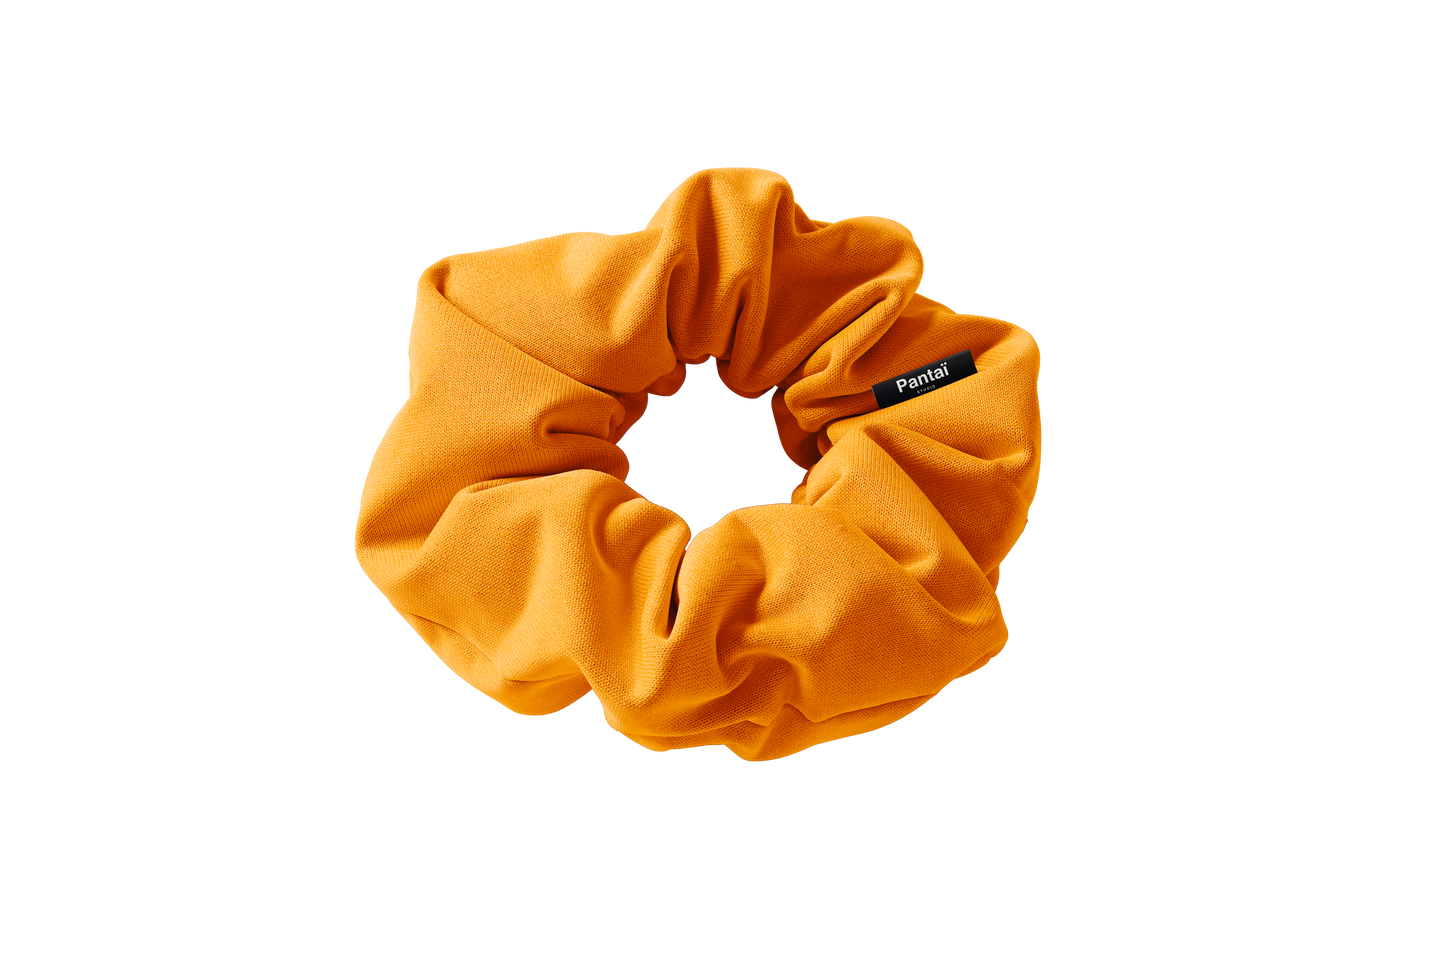 Scrunchie Orange